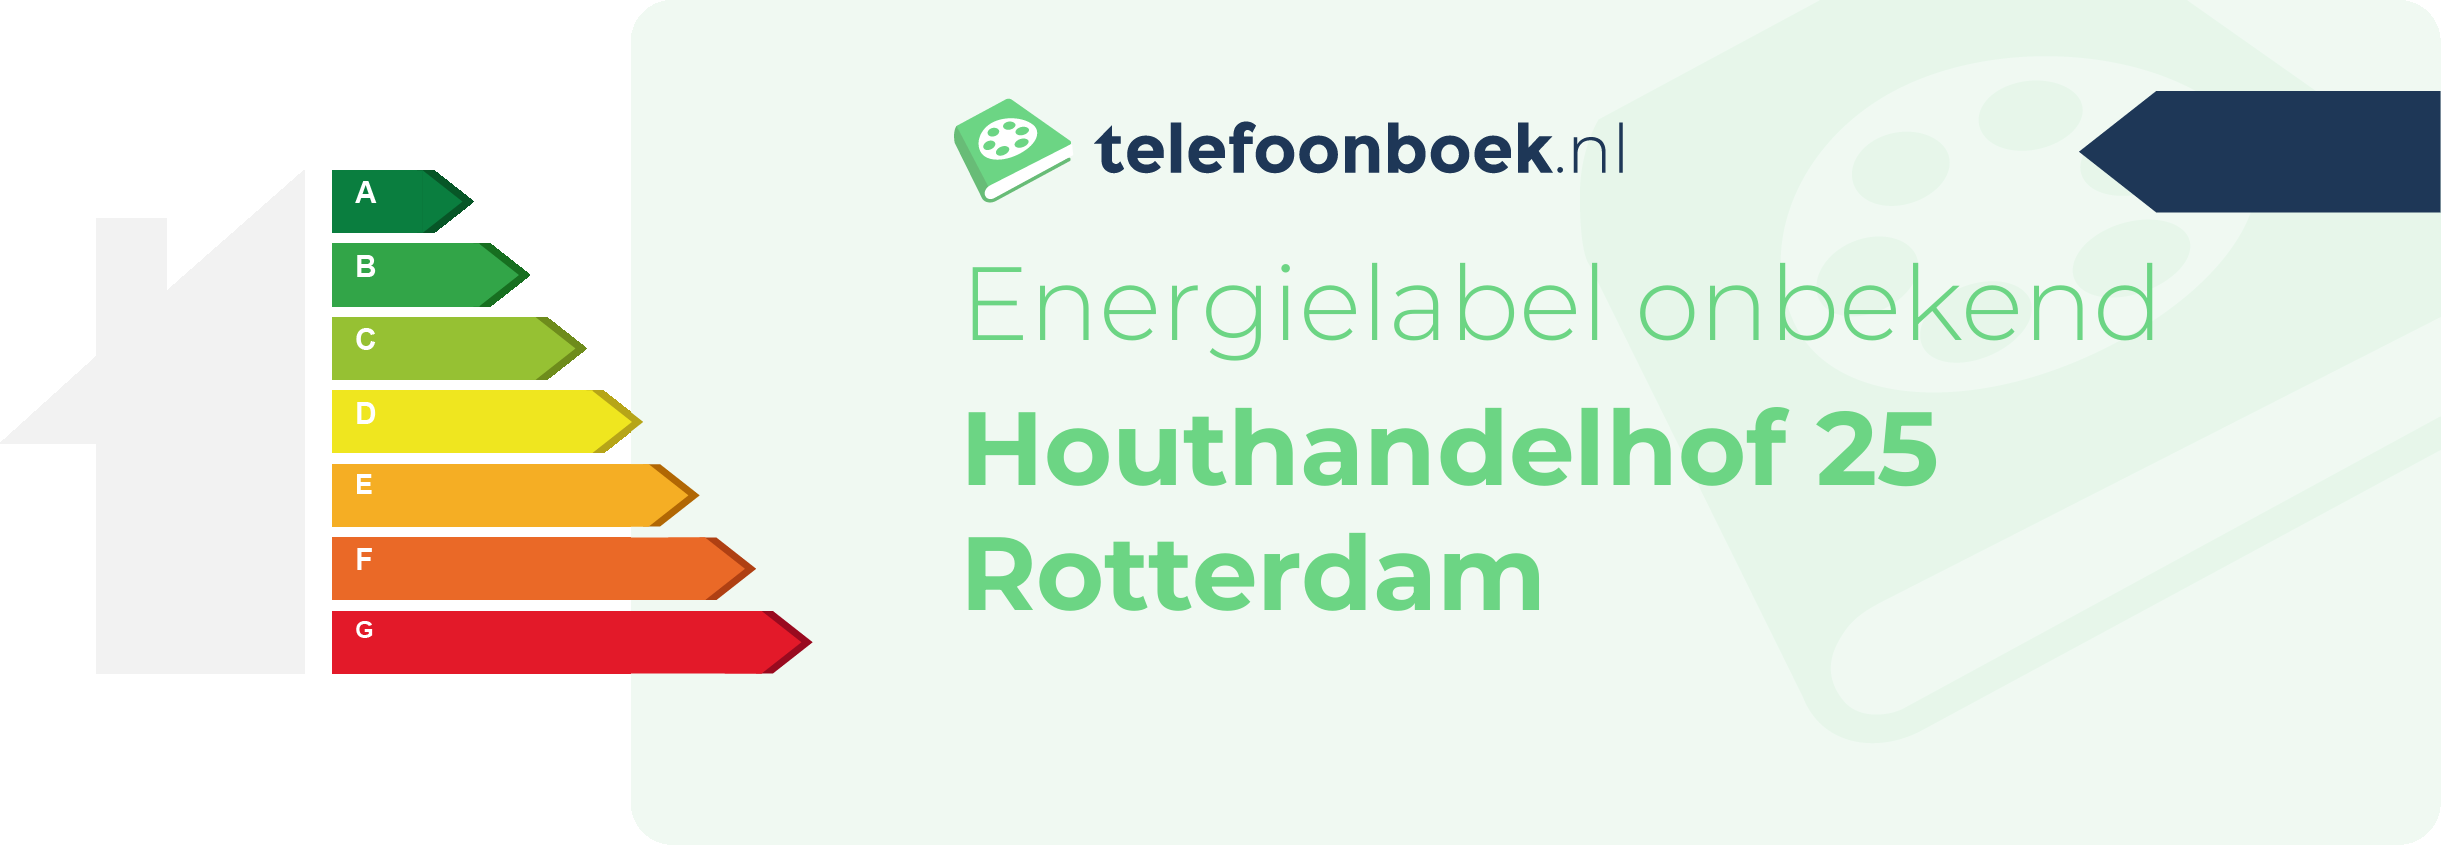 Energielabel Houthandelhof 25 Rotterdam